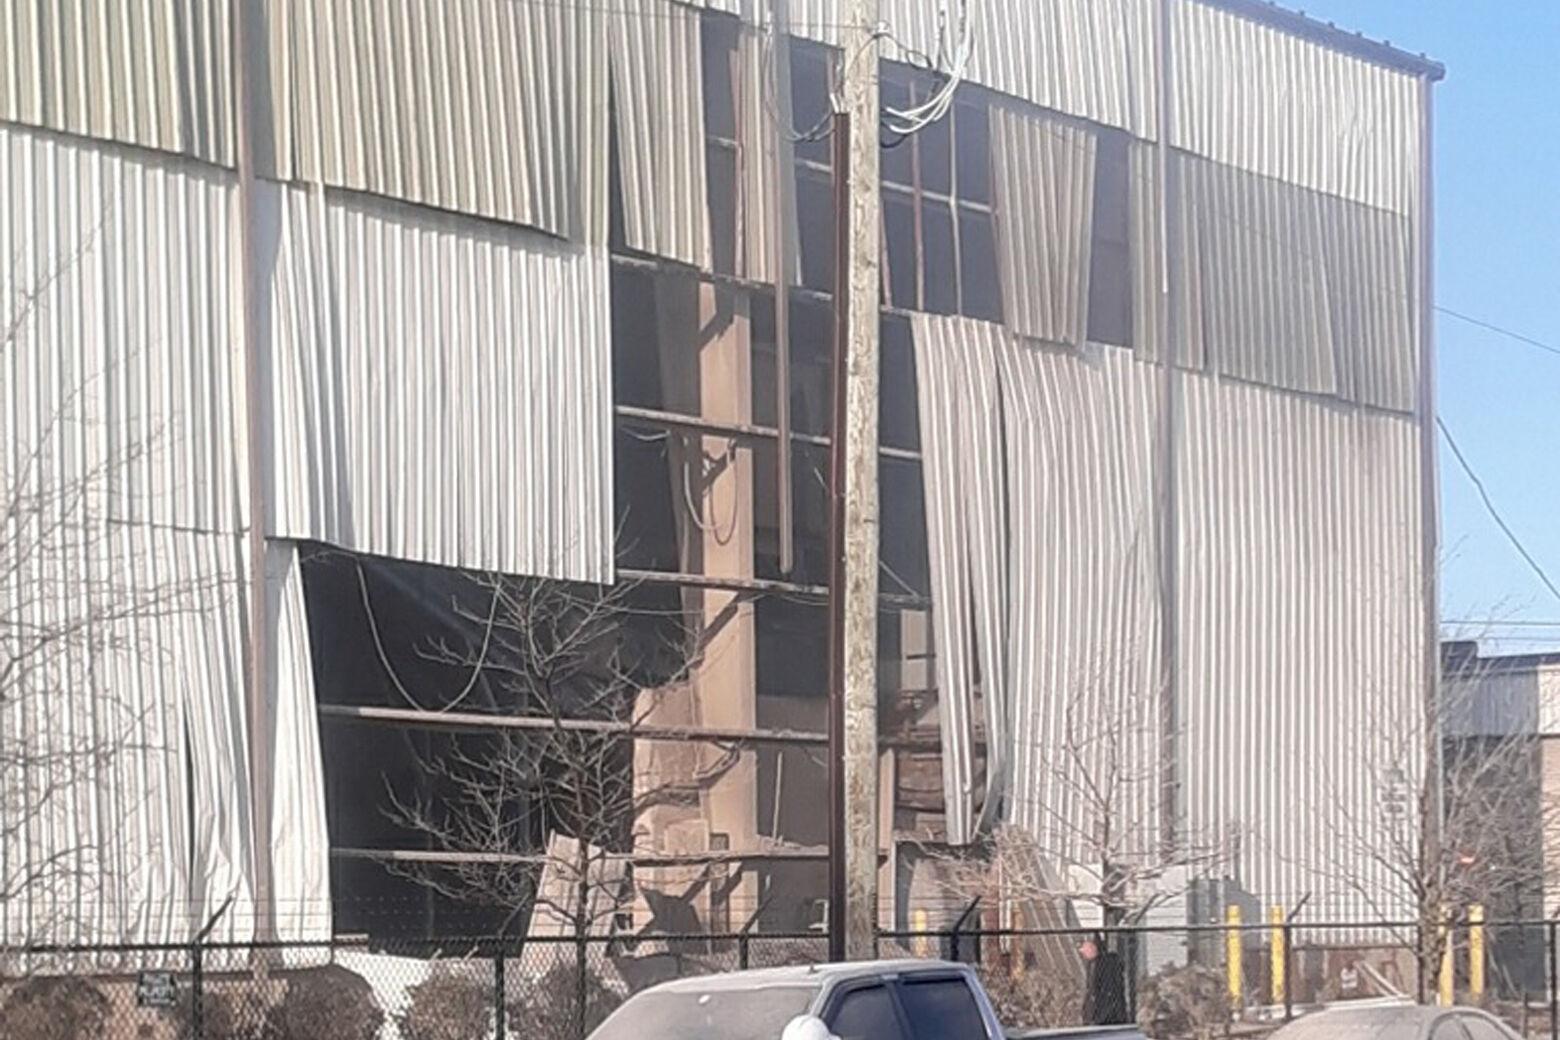 Damaged warehouse